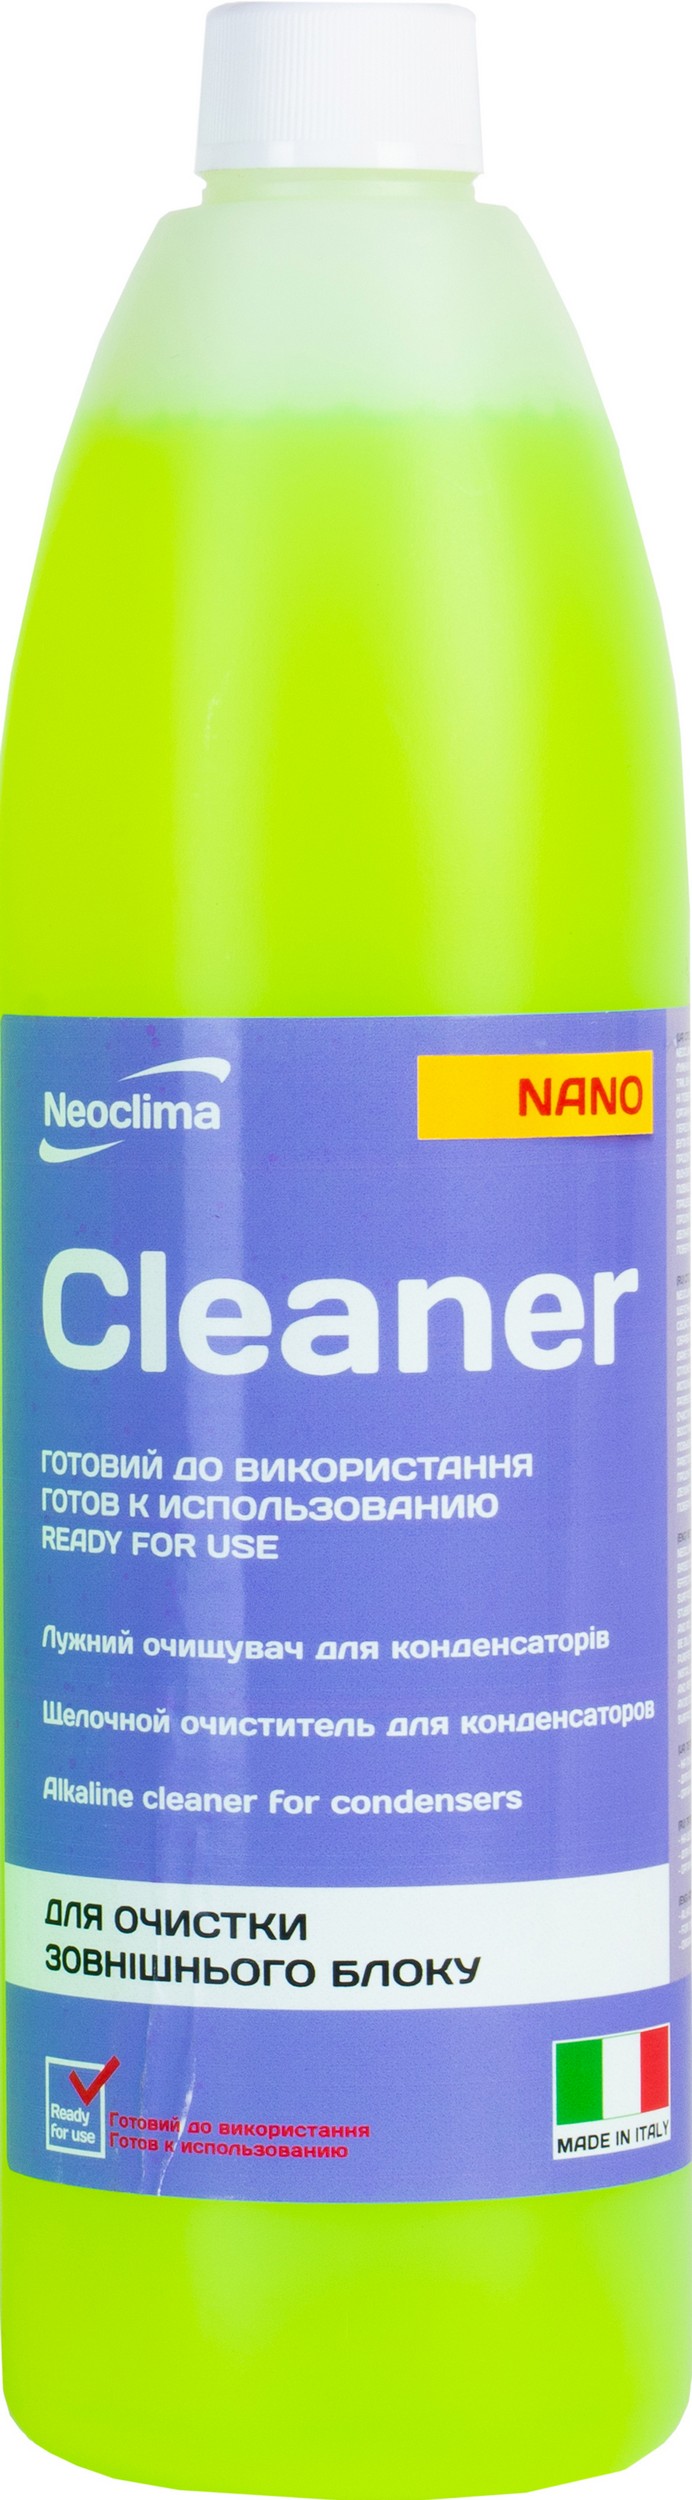 Відгуки очищувач для кондиціонерів Neoclima Cleaner Nano 1 л, спрей в Україні